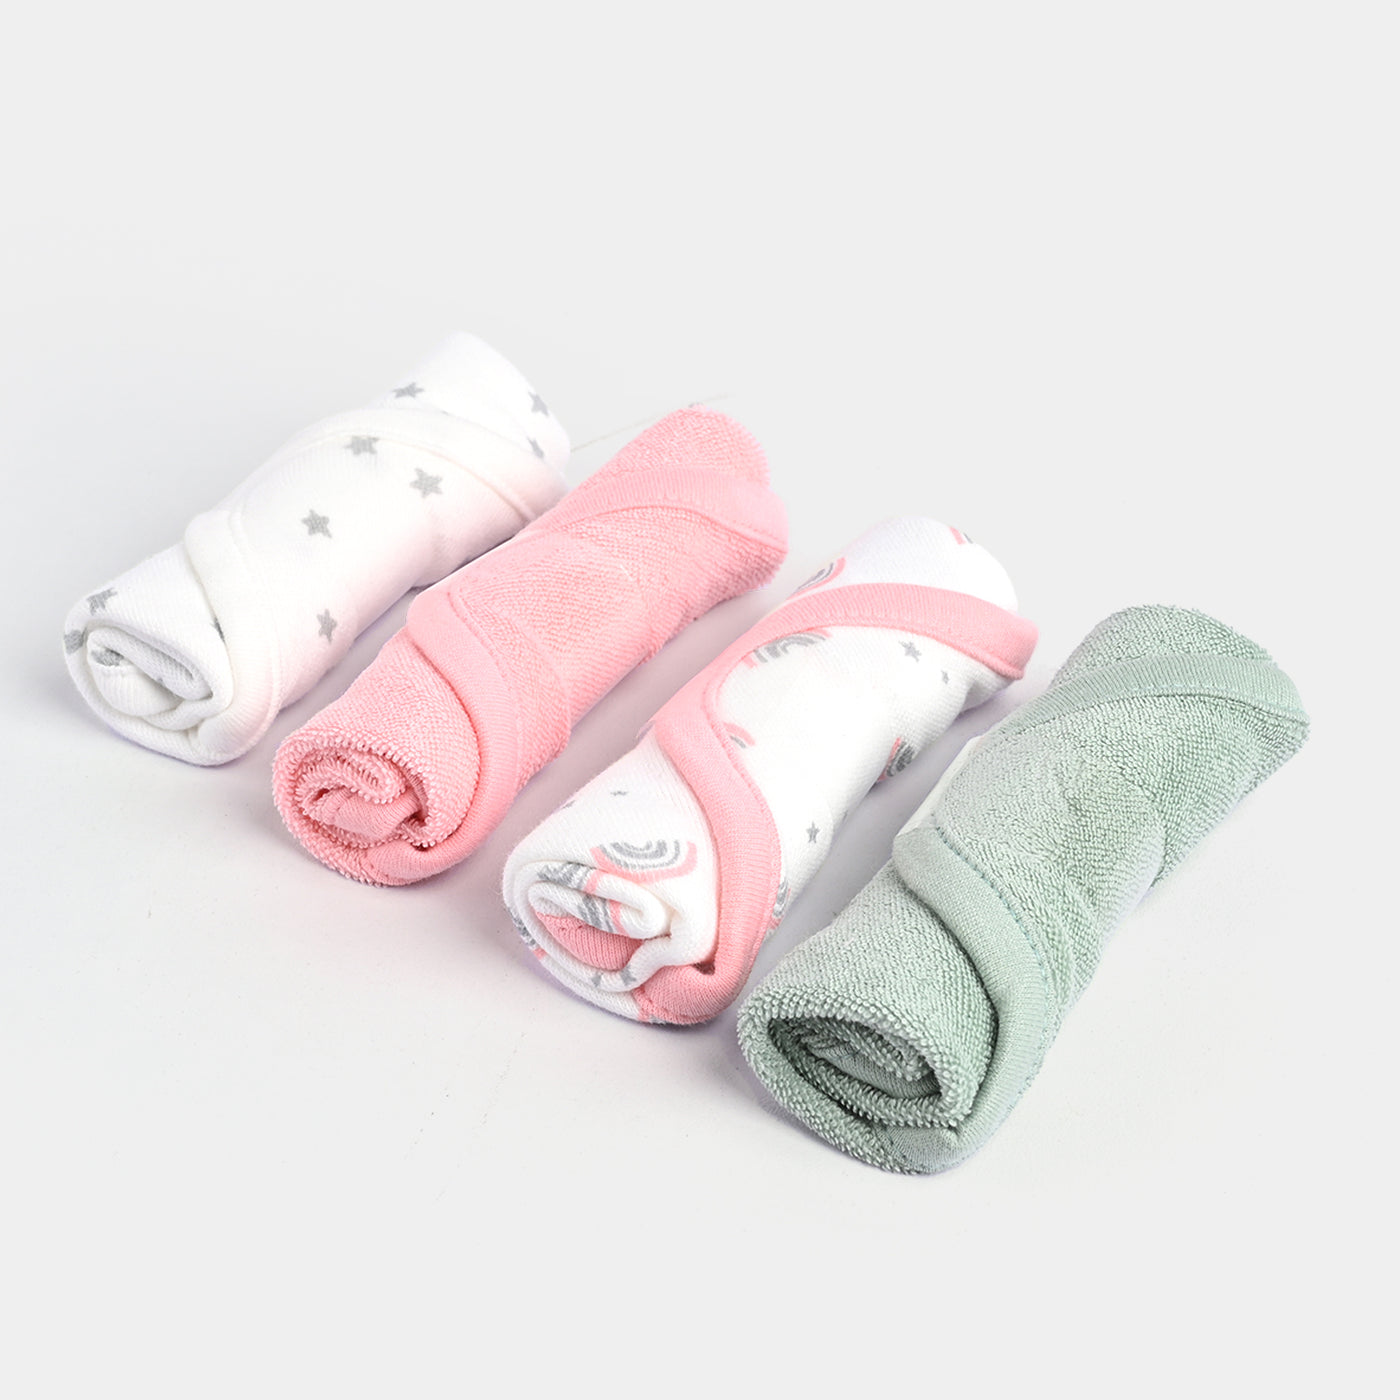 Baby Face Towel 4Pcs - Set